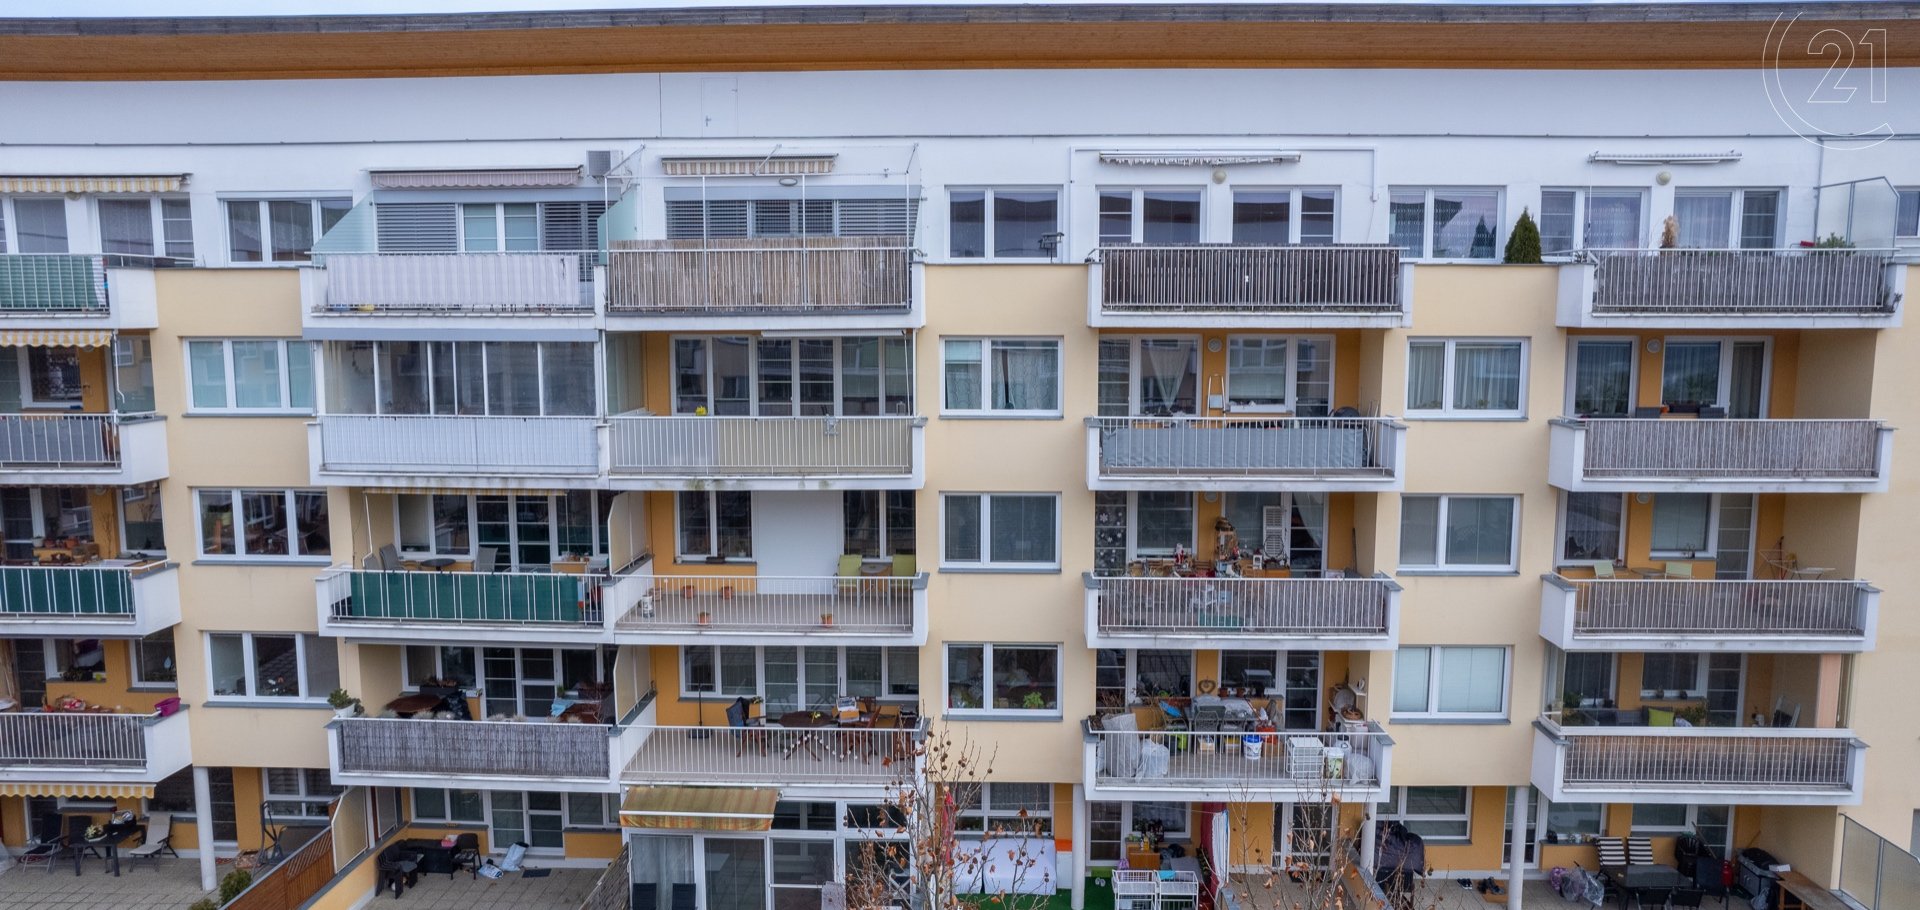 Prodej bytu 3+kk, 75m2 s prostornou terasou v Brně, Líšni